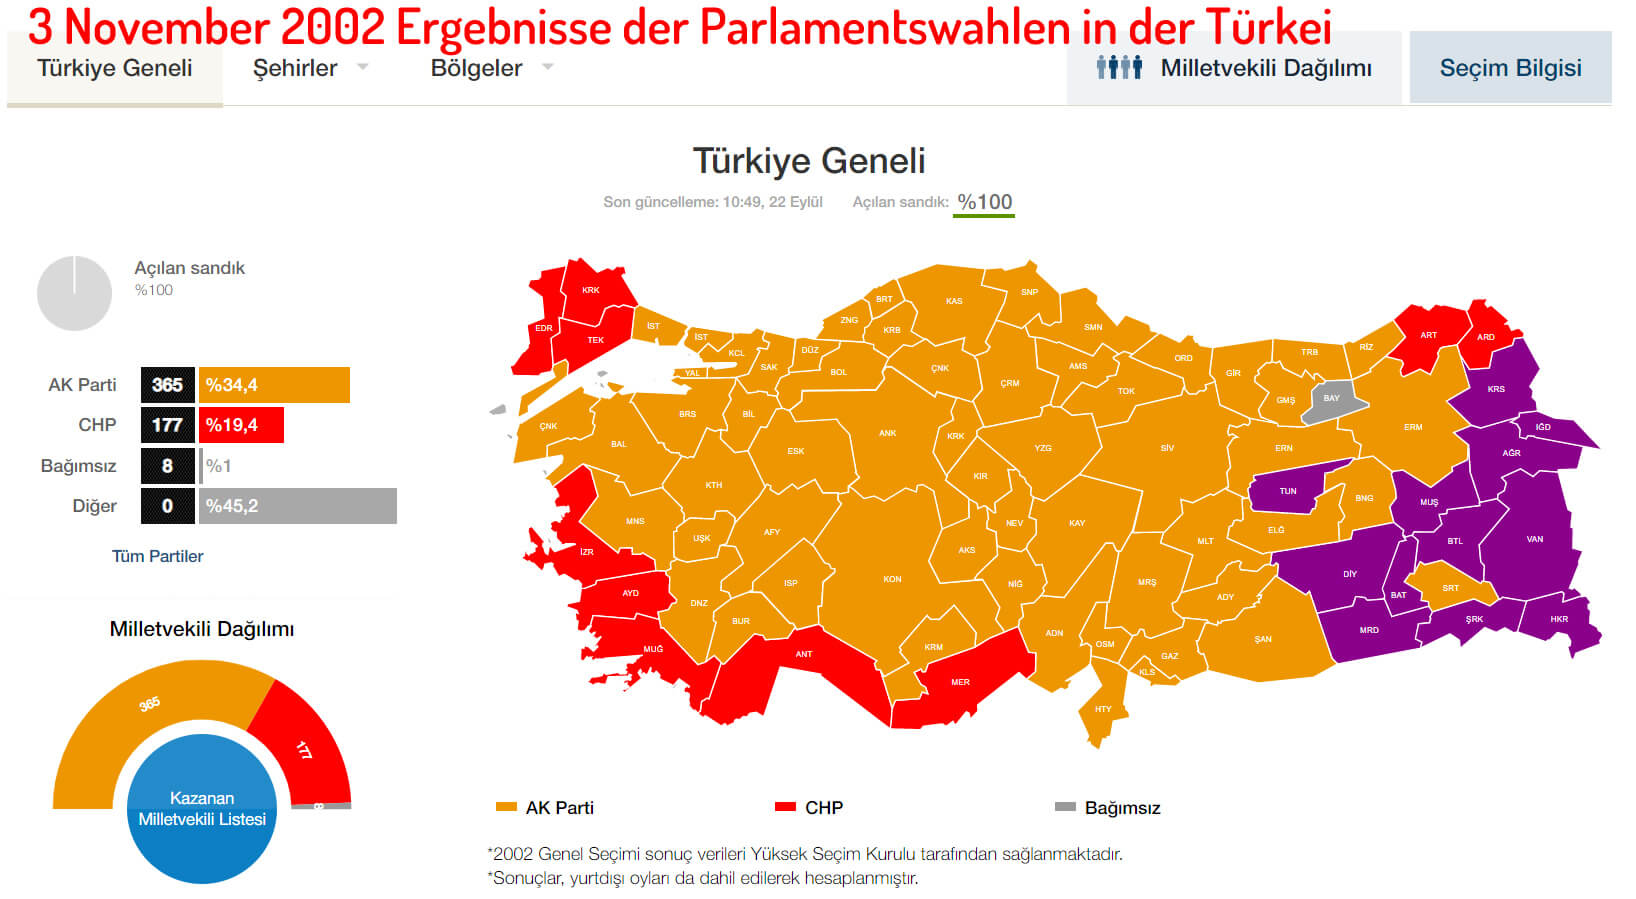 3 November 2002 Ergebnisse der Parlamentswahlen in der Türkei